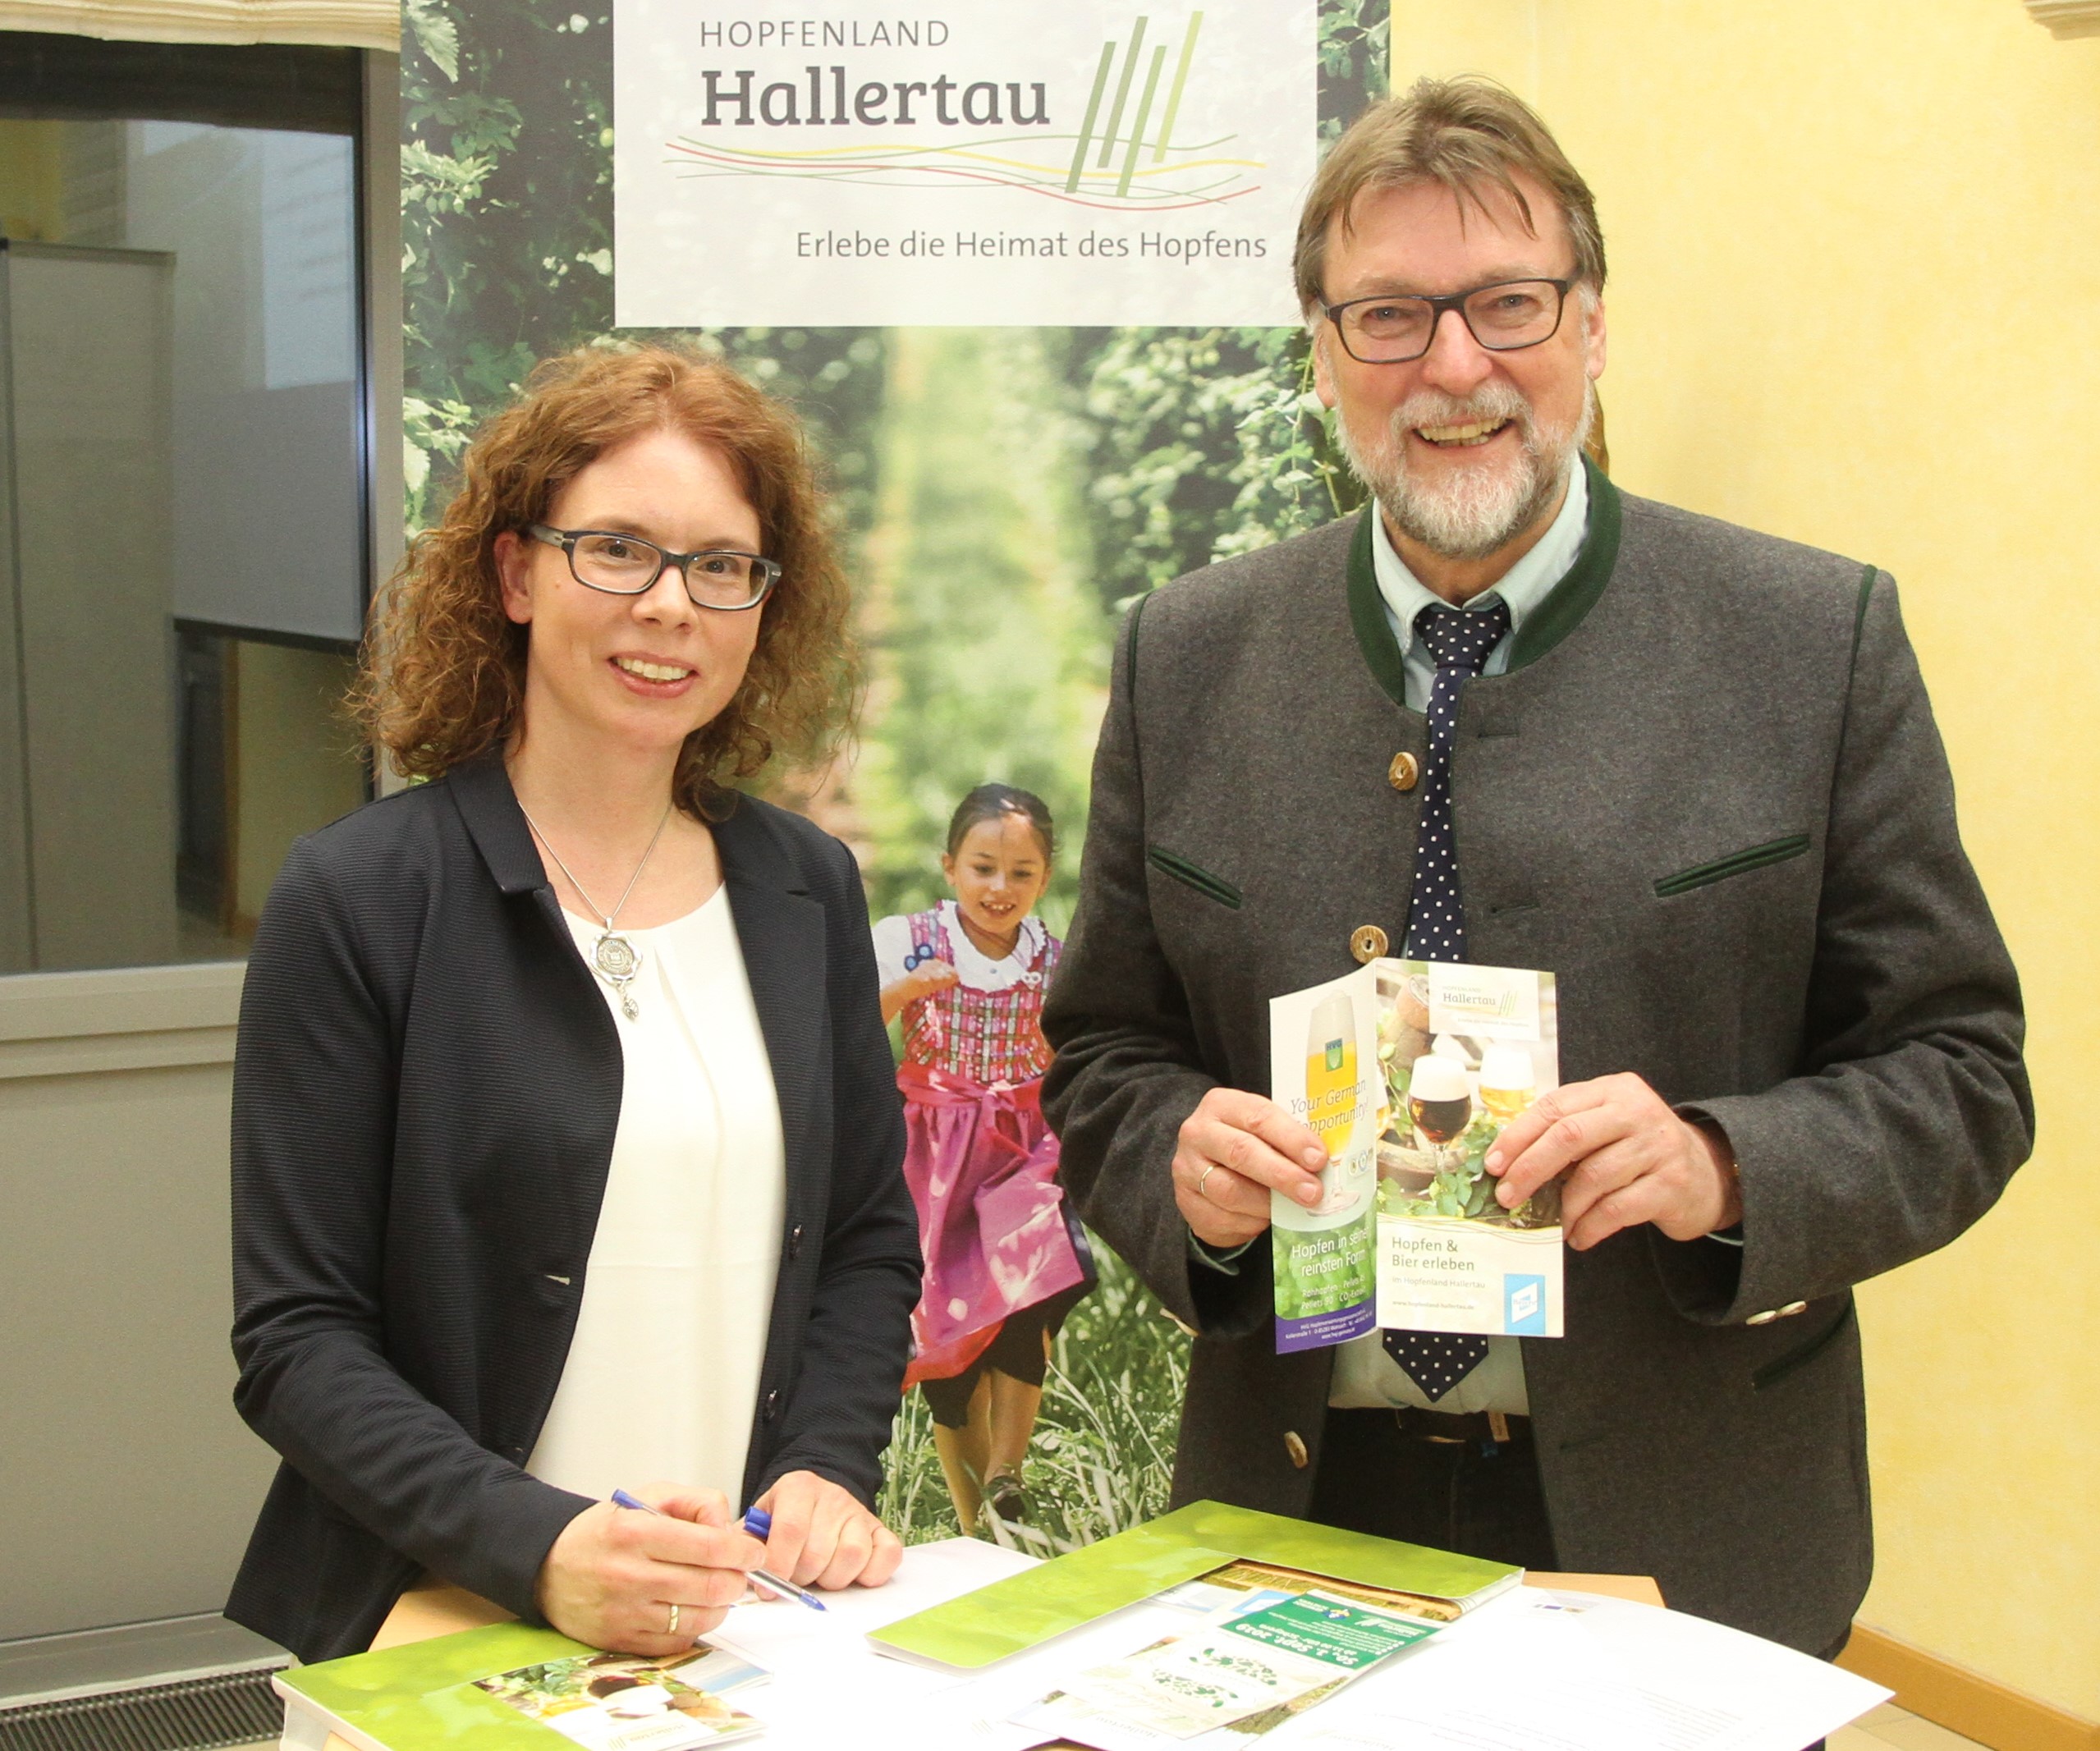 Der Vorsitzende des Hopfenland Hallertau Tourismus e.V., Martin Wolf (Landrat Pfaffenhofen a.d. Ilm) und Heidemarie Gmelch vom Tourismusverein konnten den Mitgliedern erneut steigende Übernachtungszahlen präsentieren.